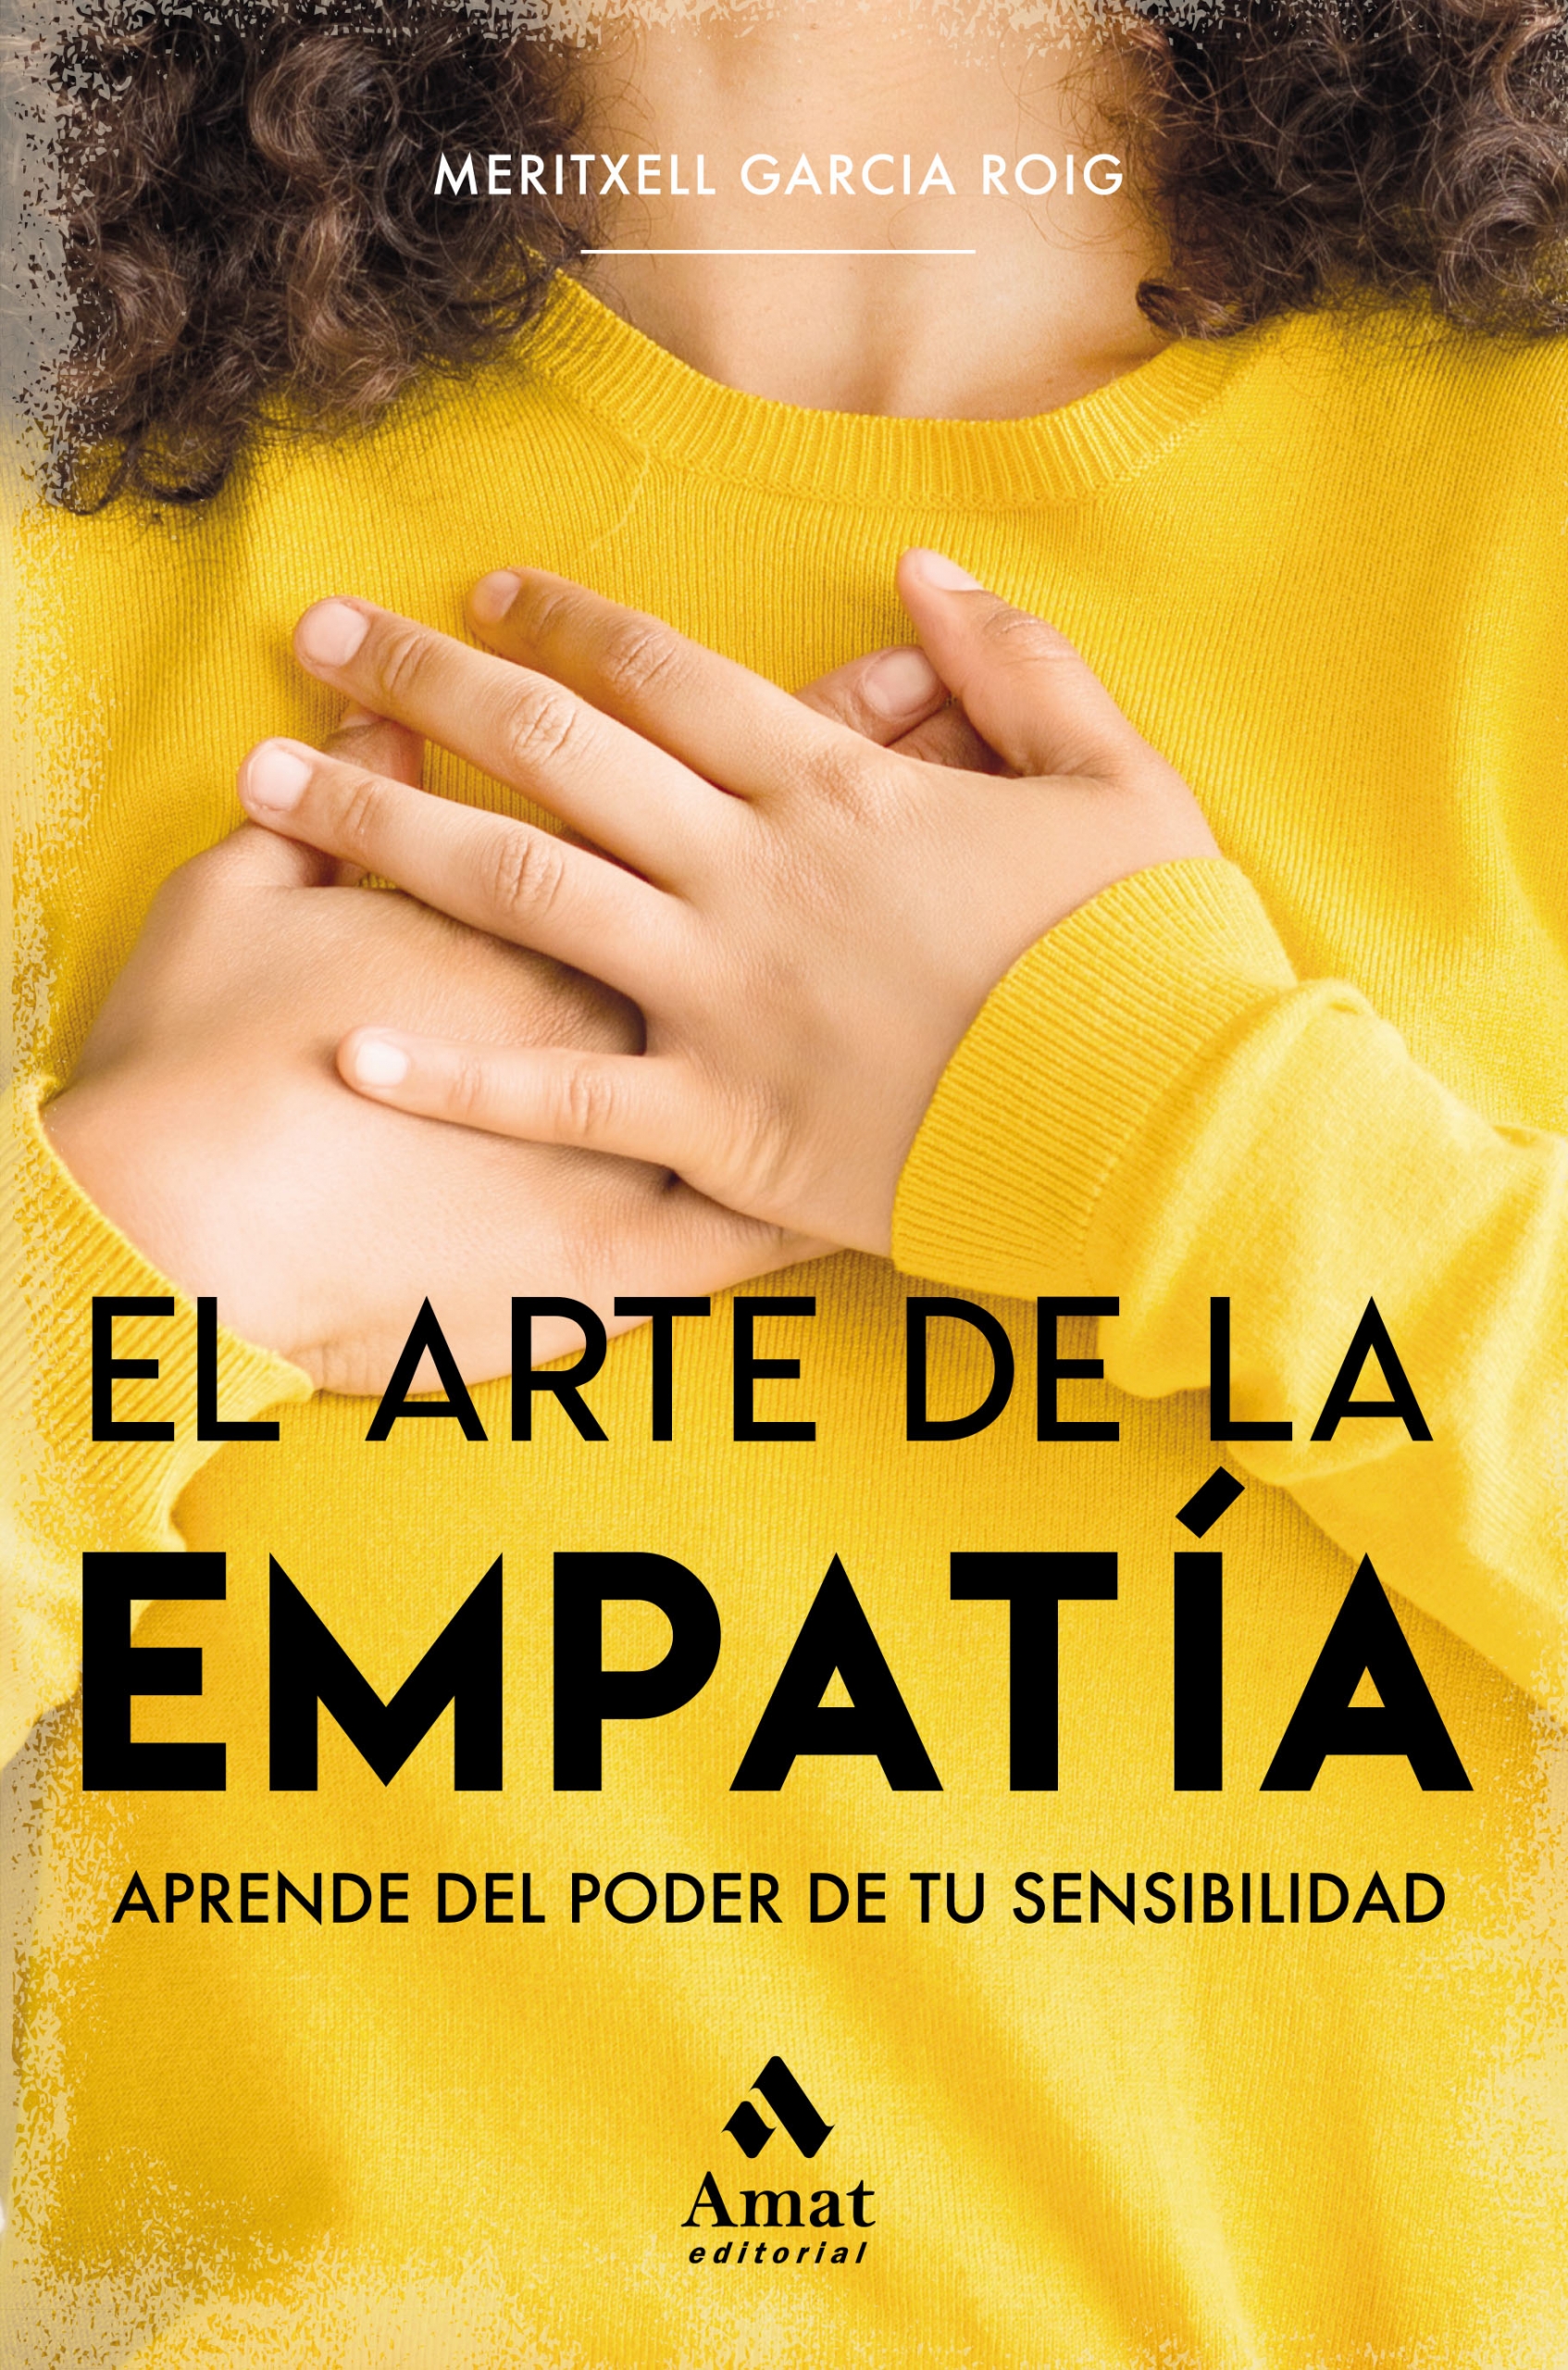 El arte de la empatía | Meritxell García Roig | Libros para vivir mejor